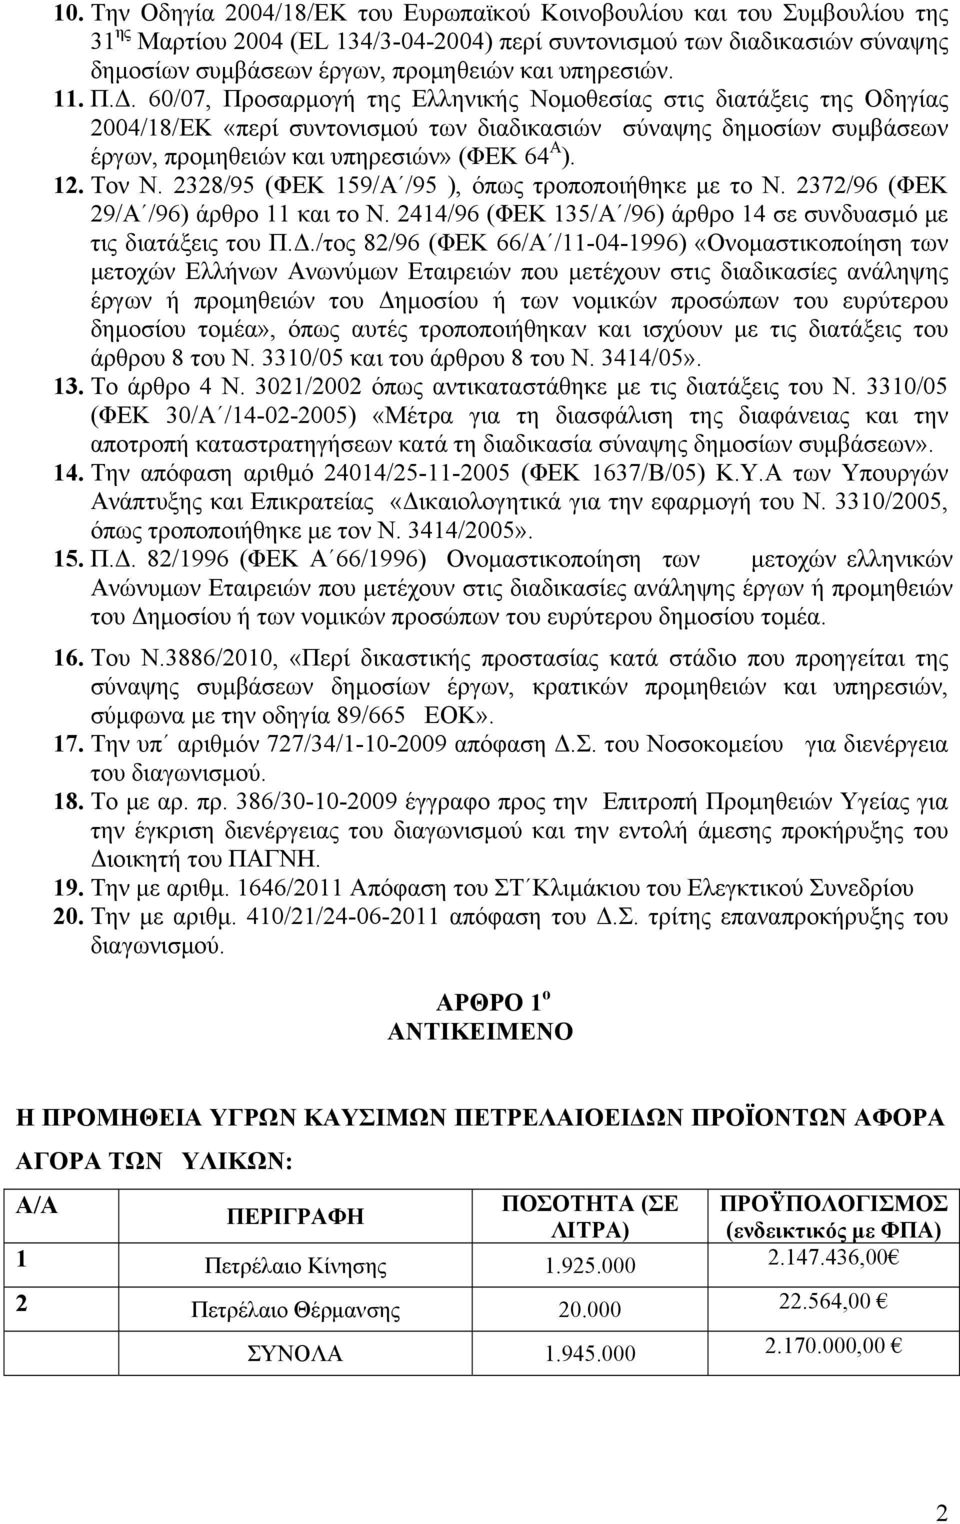 60/07, Προσαρμογή της Ελληνικής Νομοθεσίας στις διατάξεις της Οδηγίας 2004/18/ΕΚ «περί συντονισμού των διαδικασιών σύναψης δημοσίων συμβάσεων έργων, προμηθειών και υπηρεσιών» (ΦΕΚ 64 Α ). 12. Τον Ν.